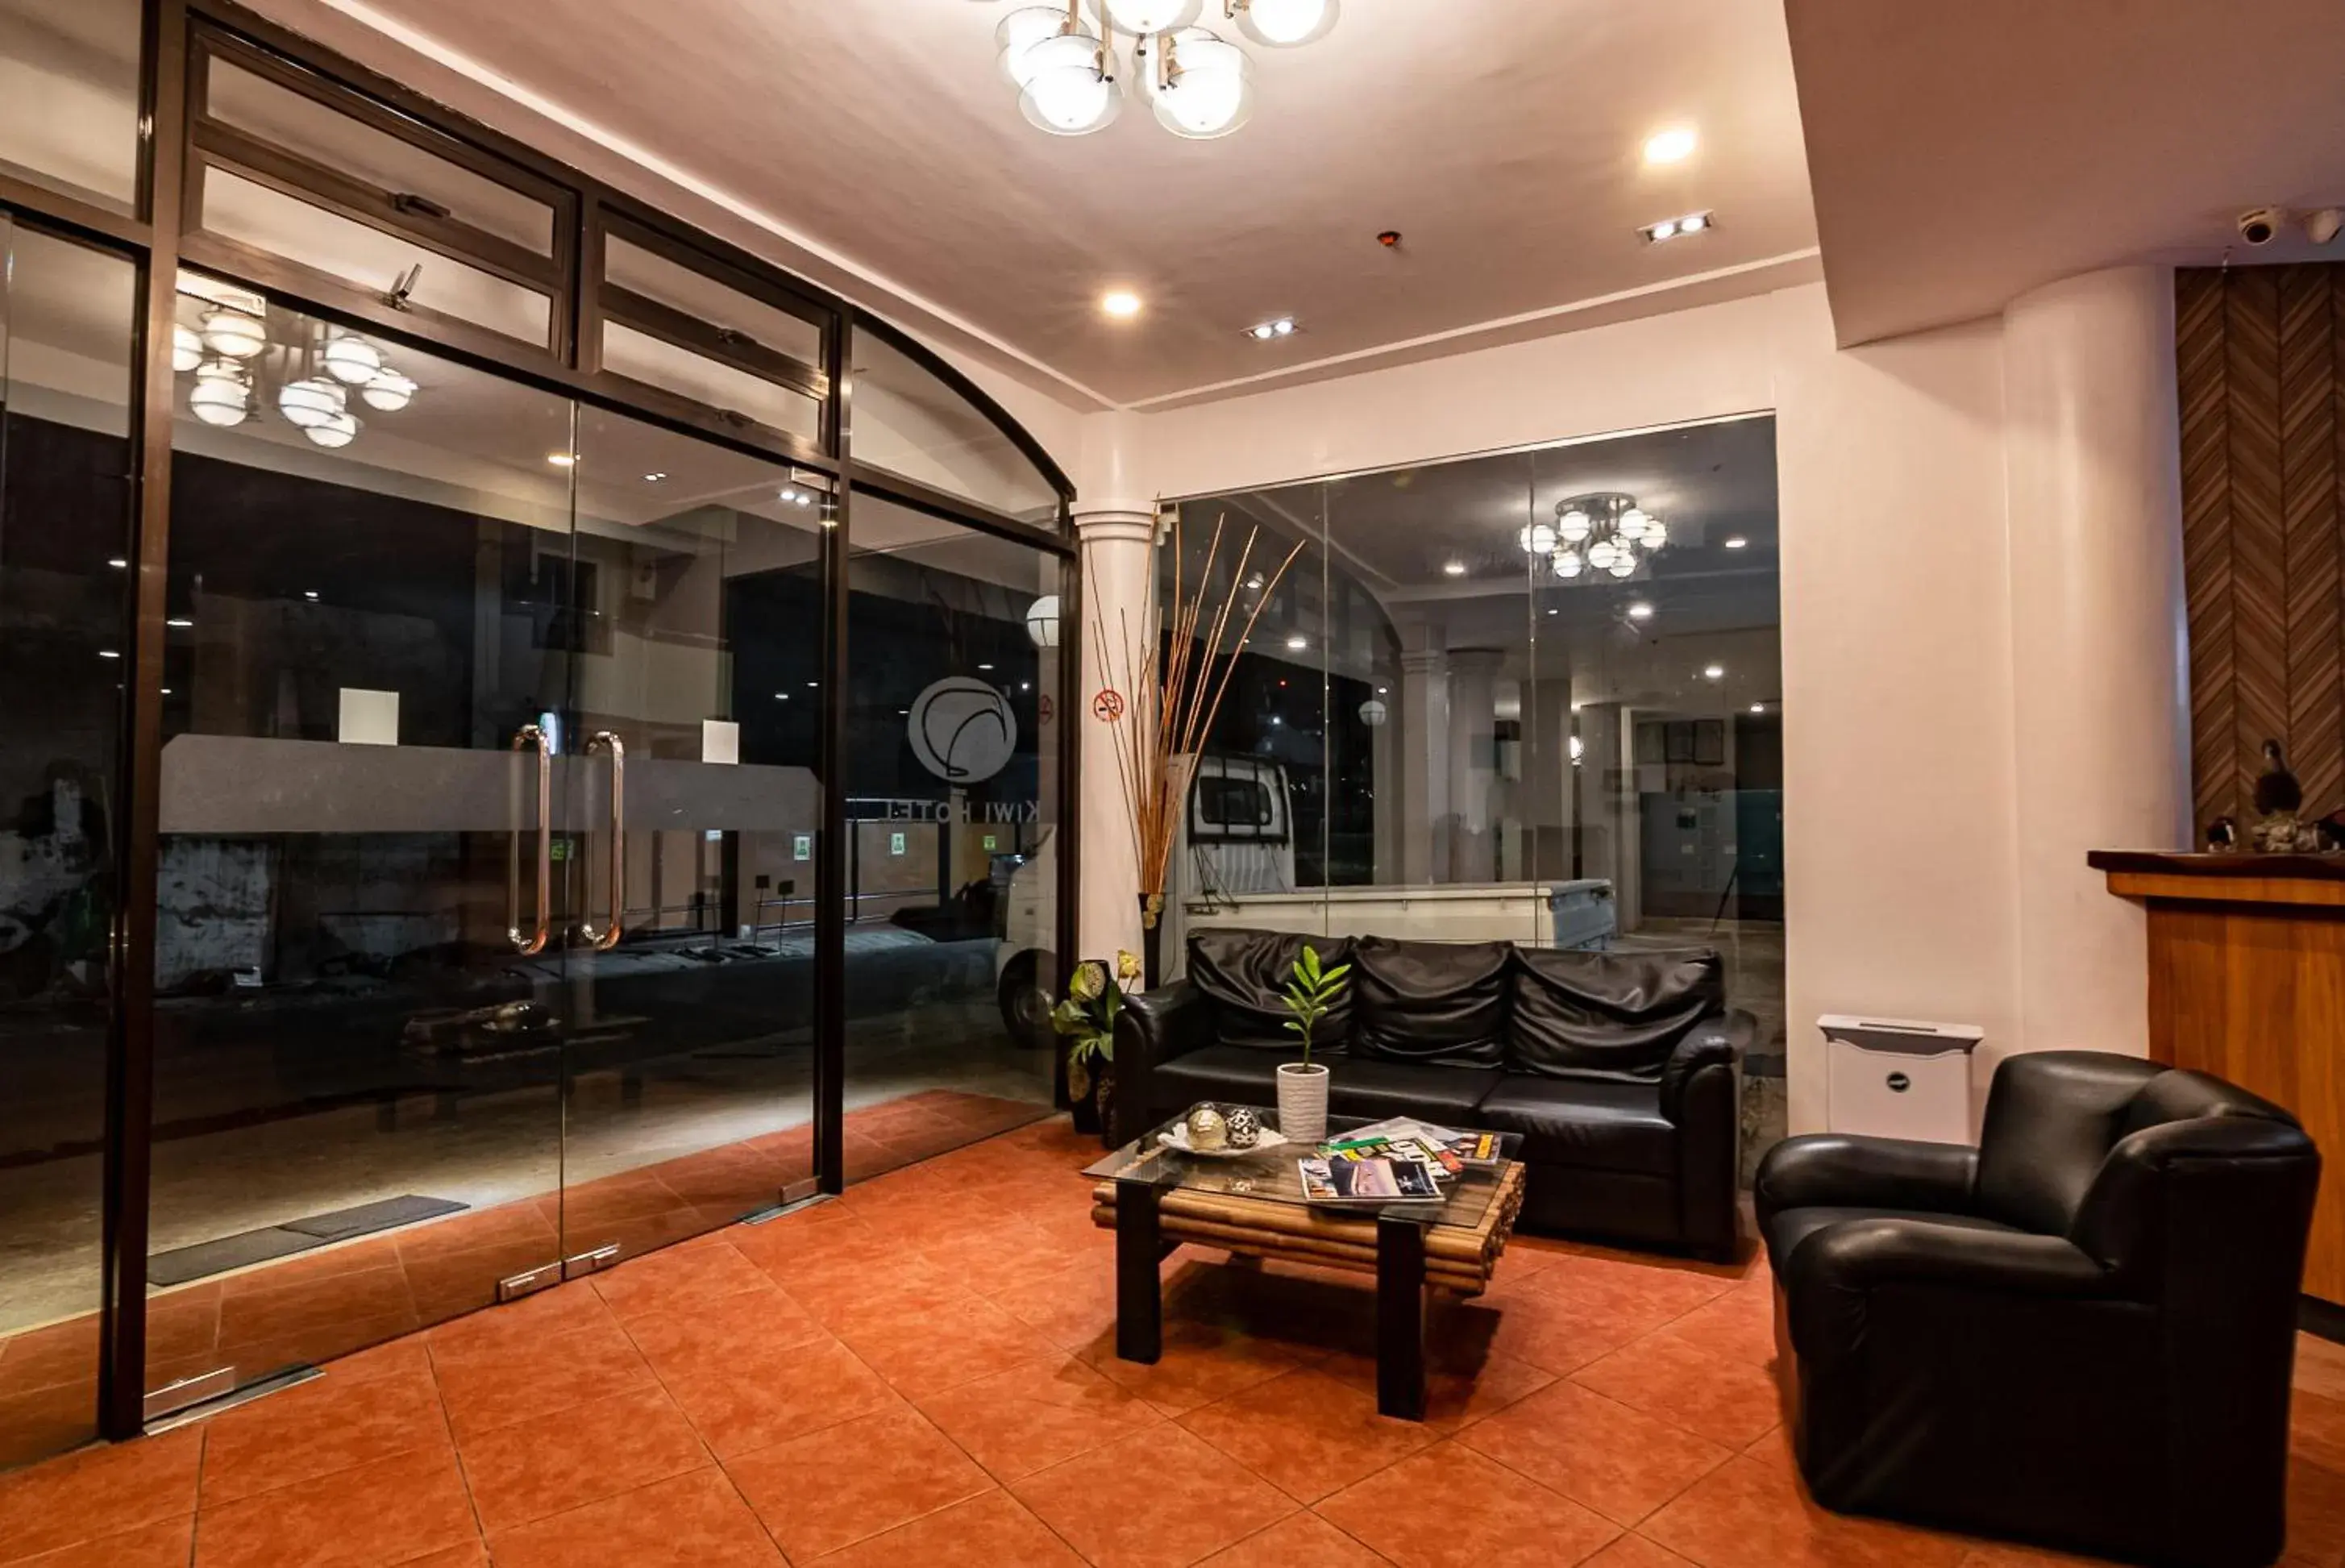 Lobby or reception in Kiwi Hotel